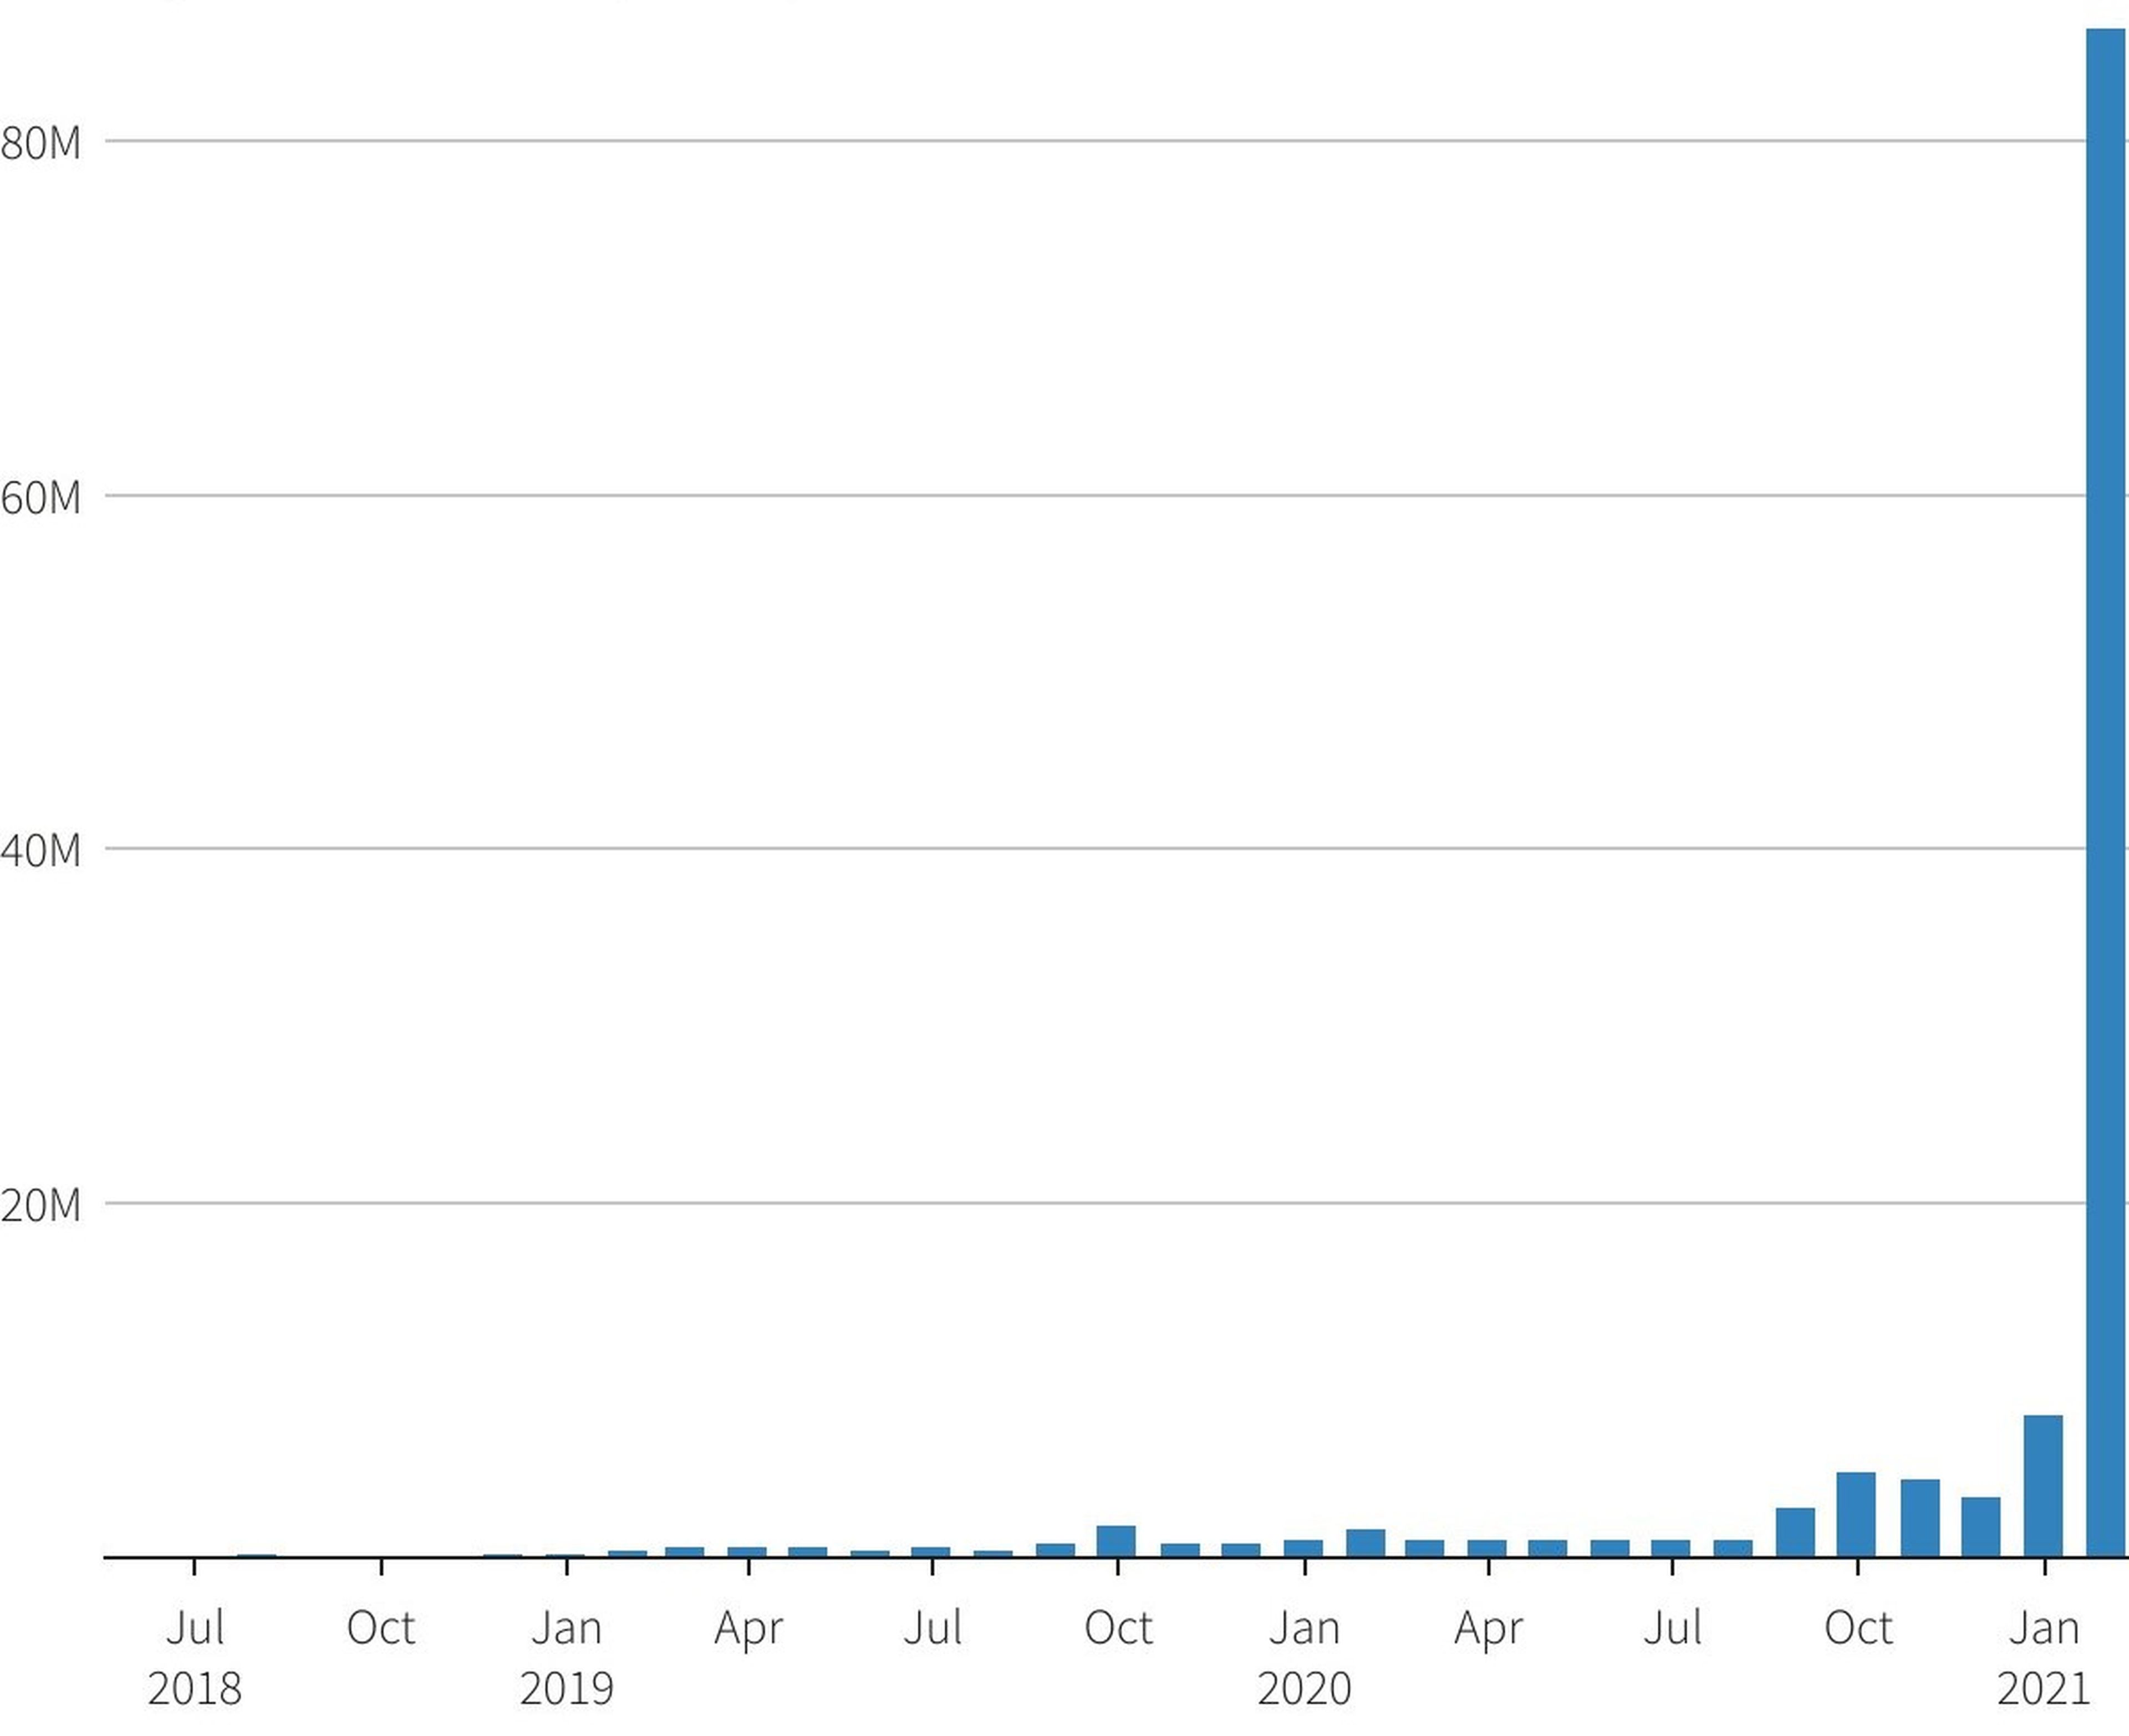 Evolución de las ventas mensuales de OpenSea, en millones de dólares.